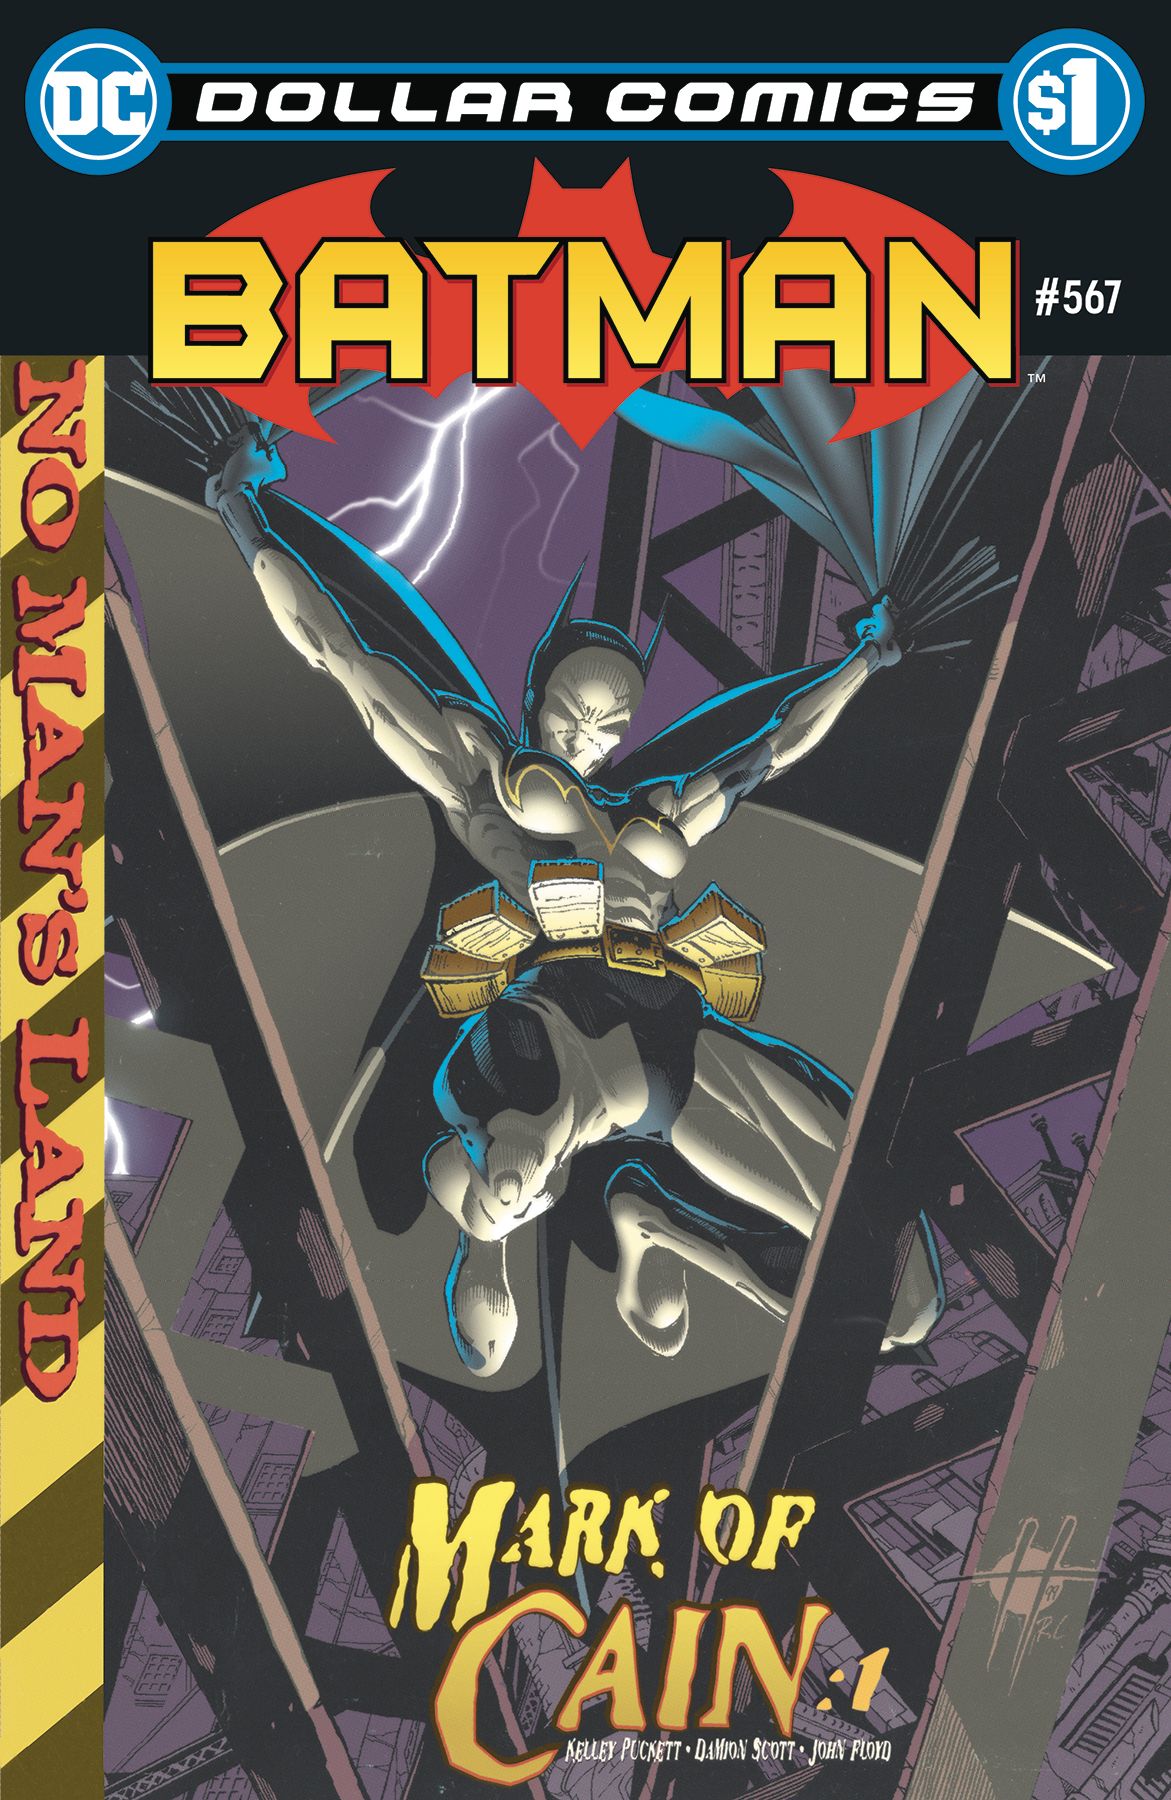 Dollar Comics: Batman #567 Comic